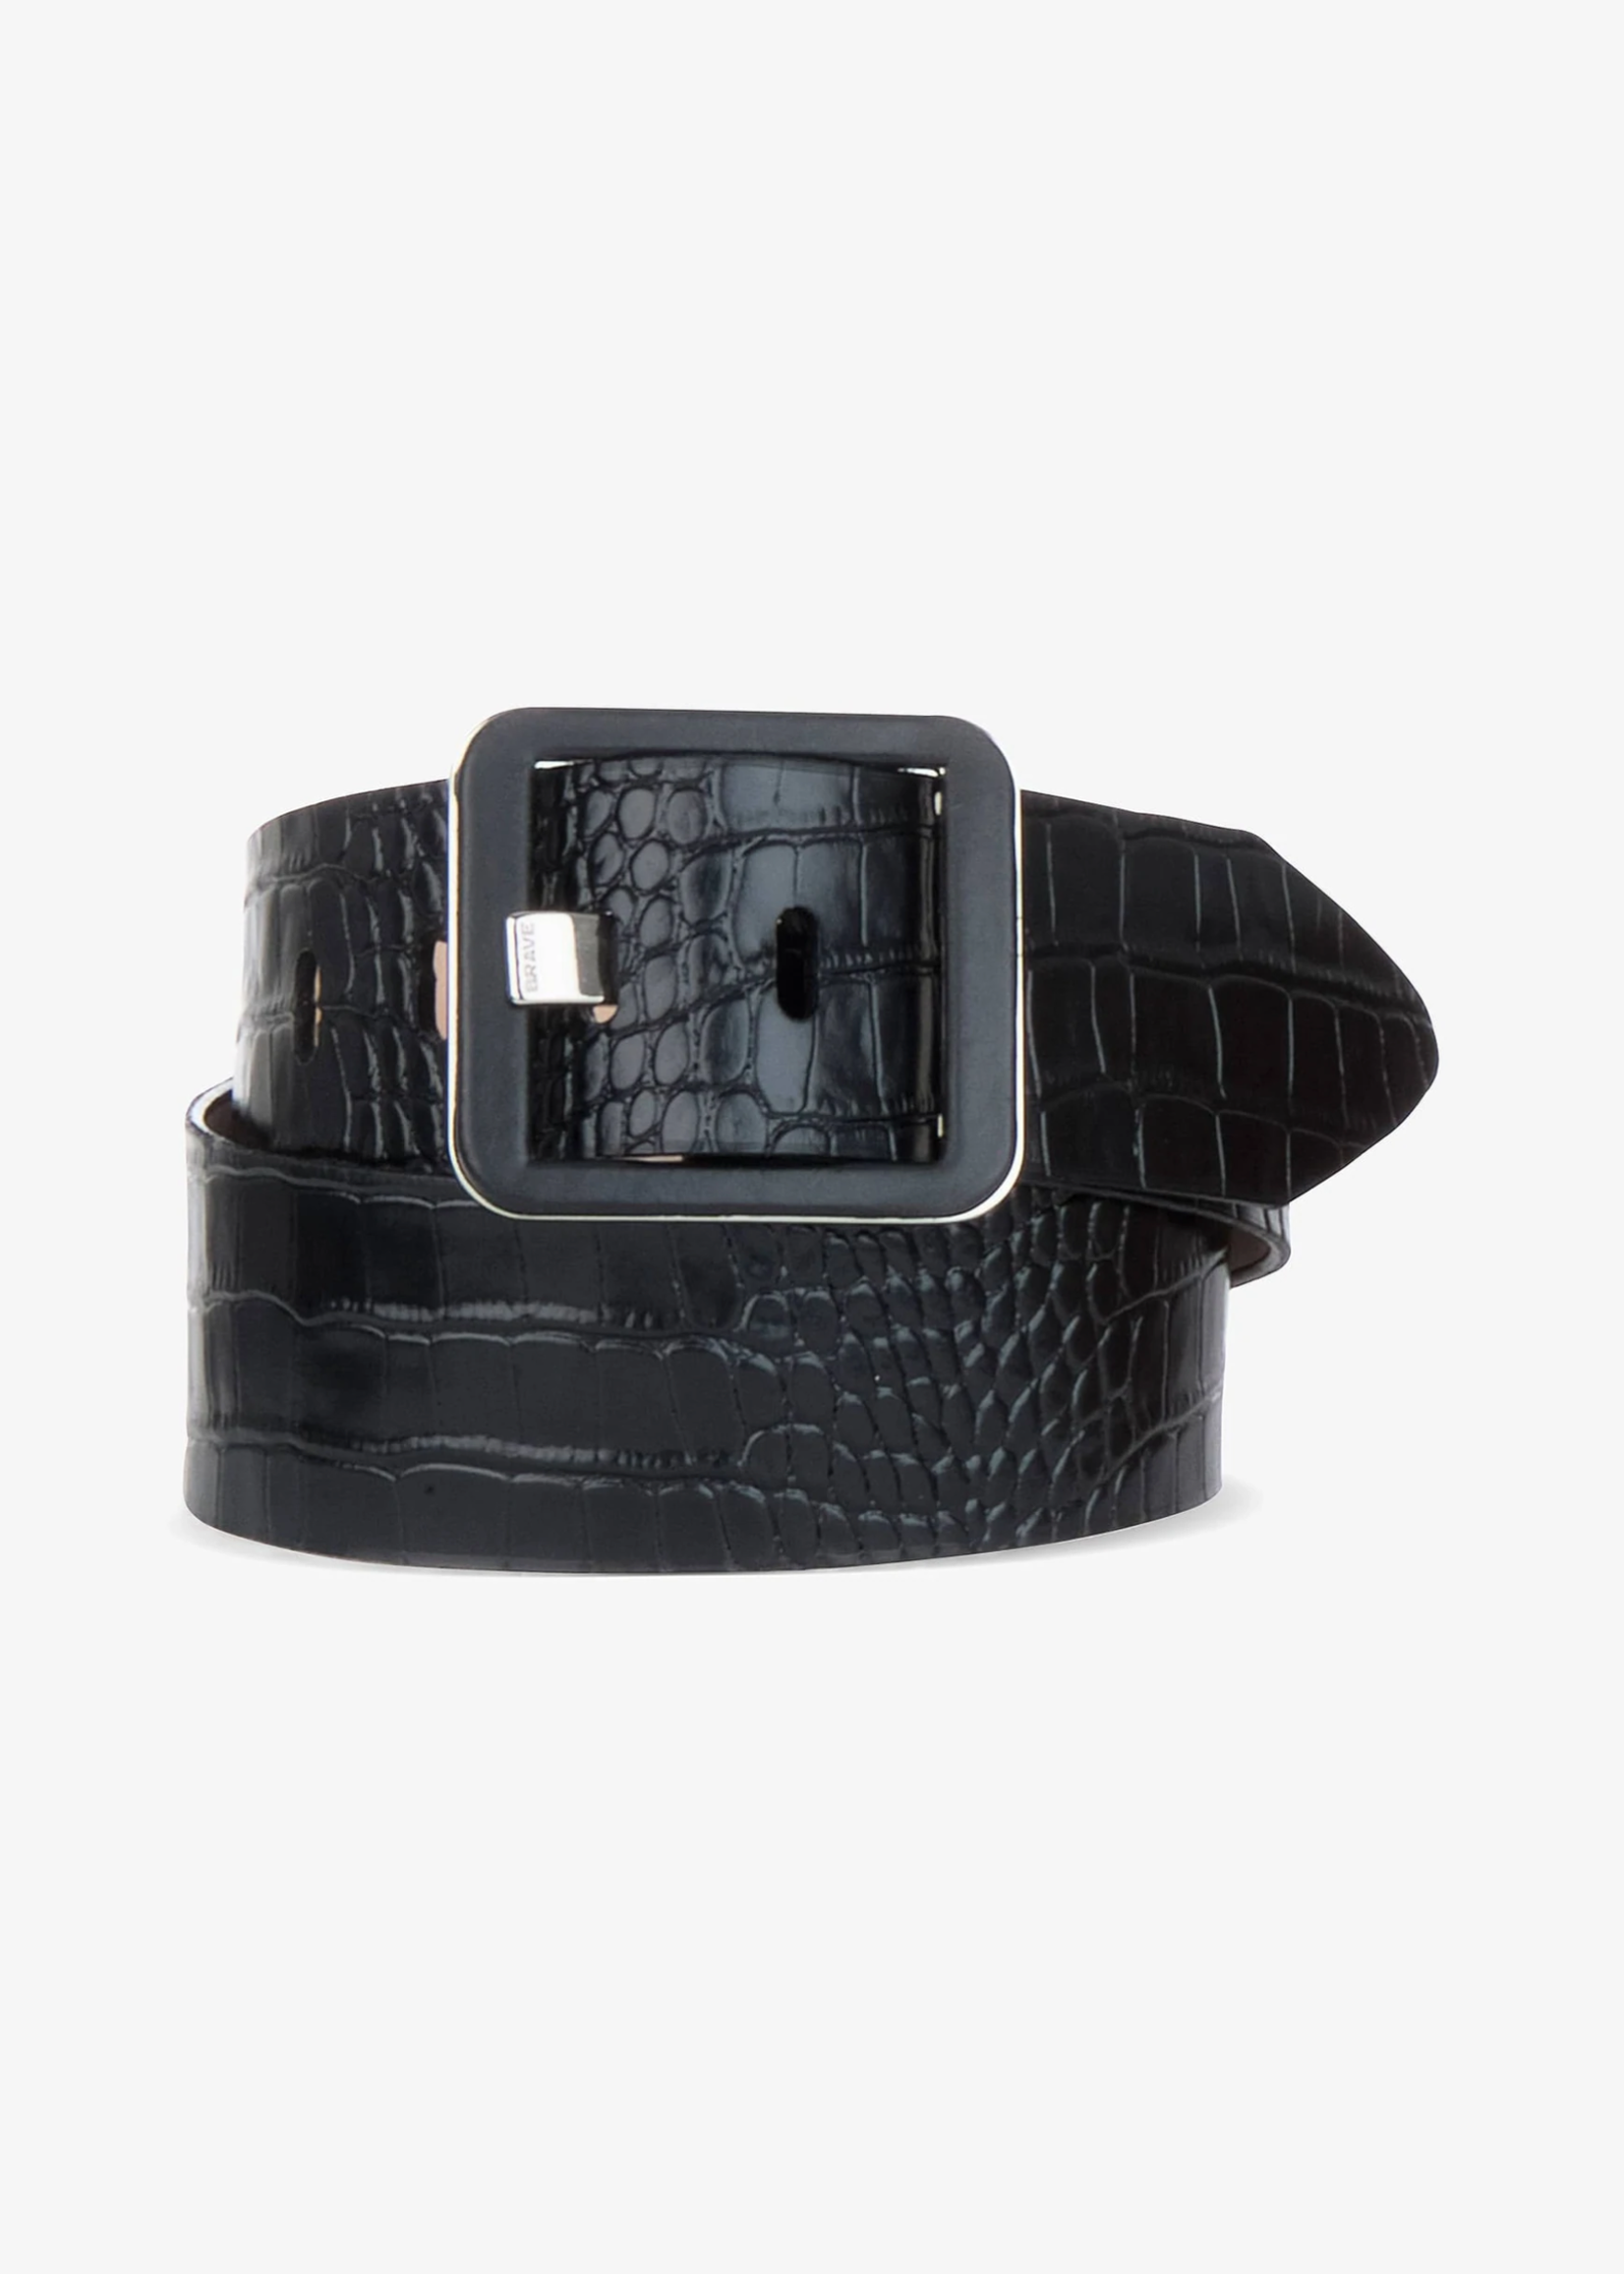 BRAVE Leather Makani Barcelona Leather Belt in Black